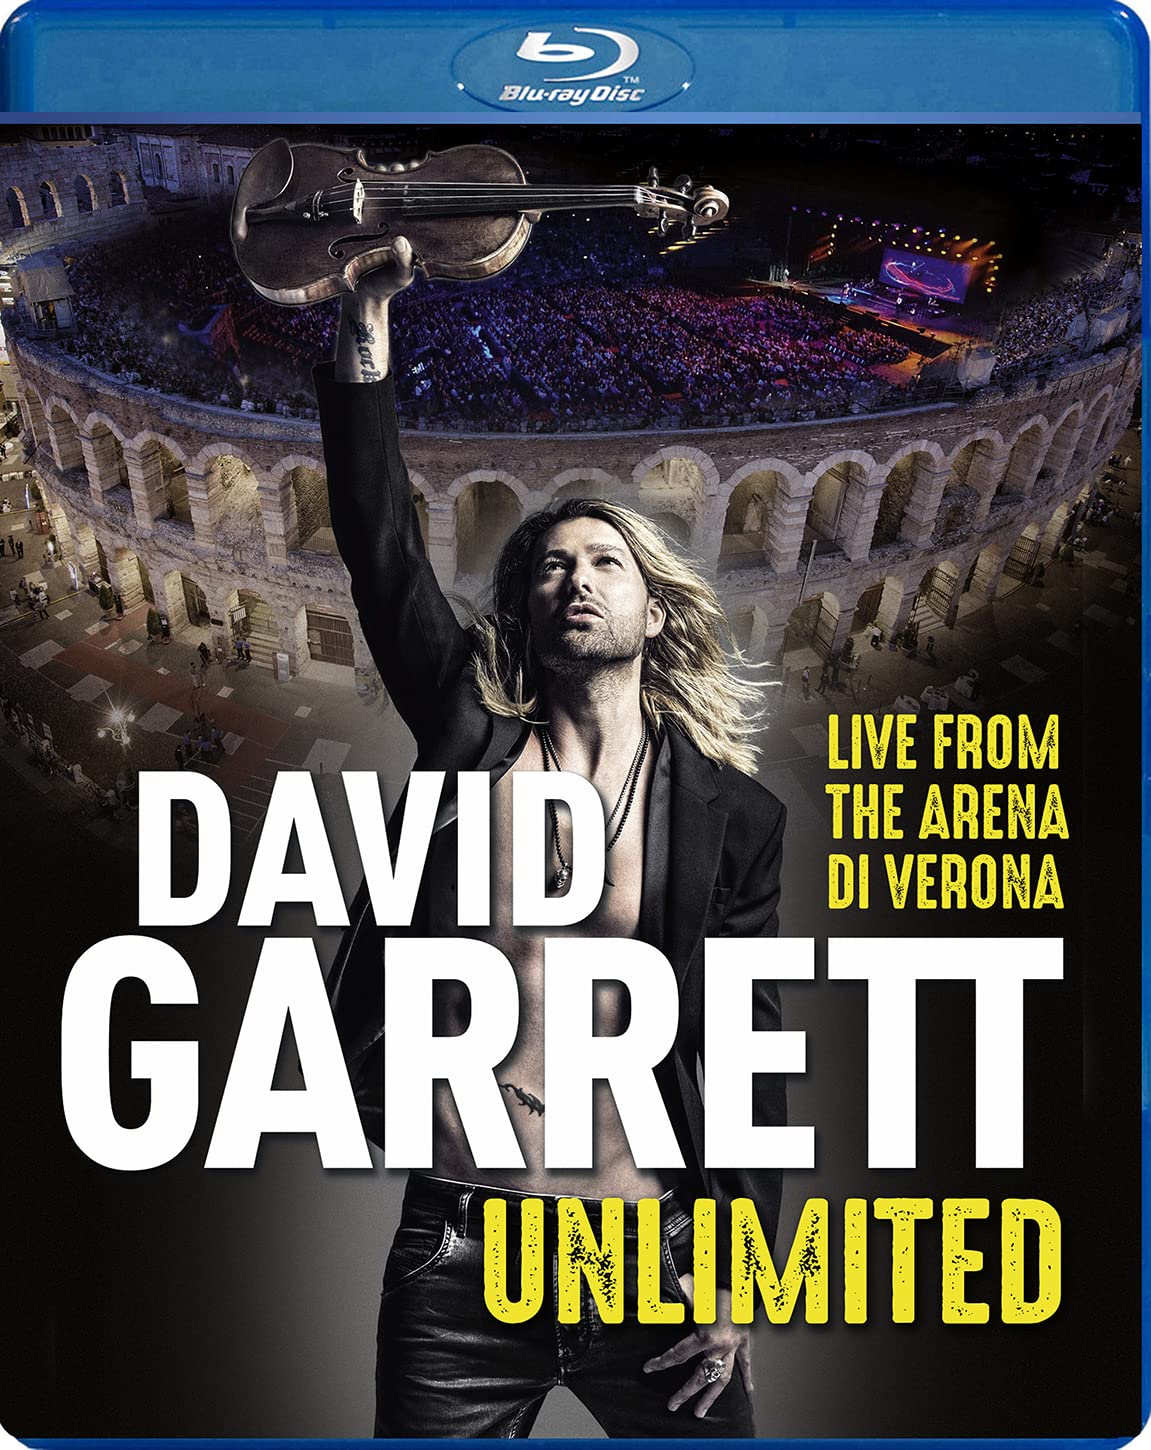 Music Blu-Ray David Garrett - Unlimited (Live From The Arena Di Verona) NUOVO SIGILLATO, EDIZIONE DEL 19/11/2021 SUBITO DISPONIBILE